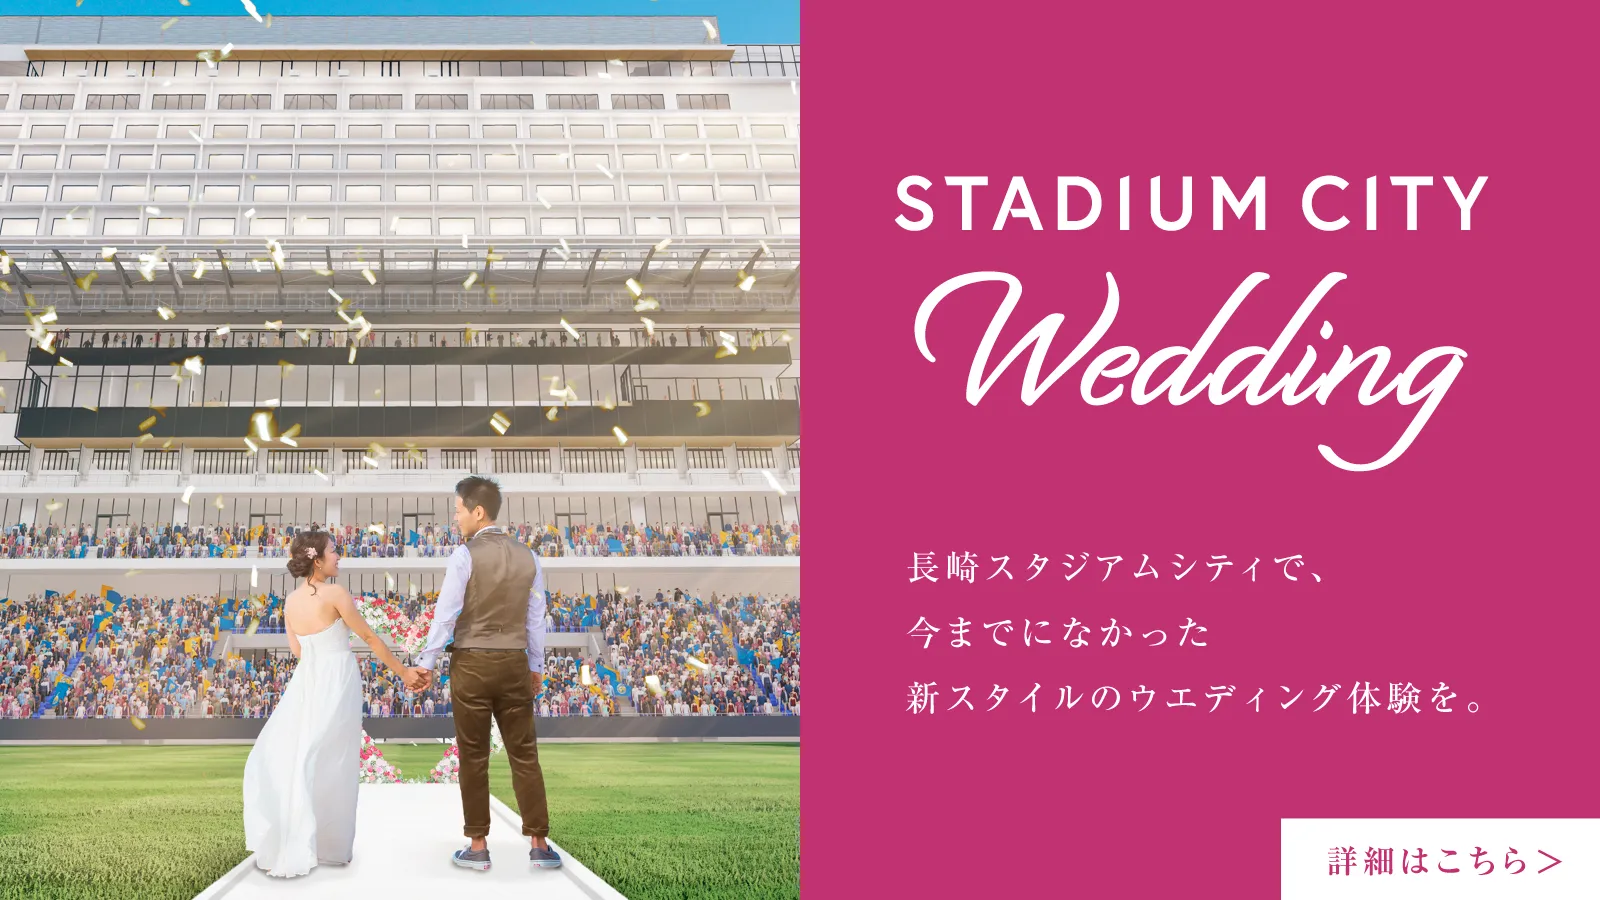 STADIUMCITY Wedding 長崎スタジアムシティで、今までになかった新スタイルのウエディング体験を。